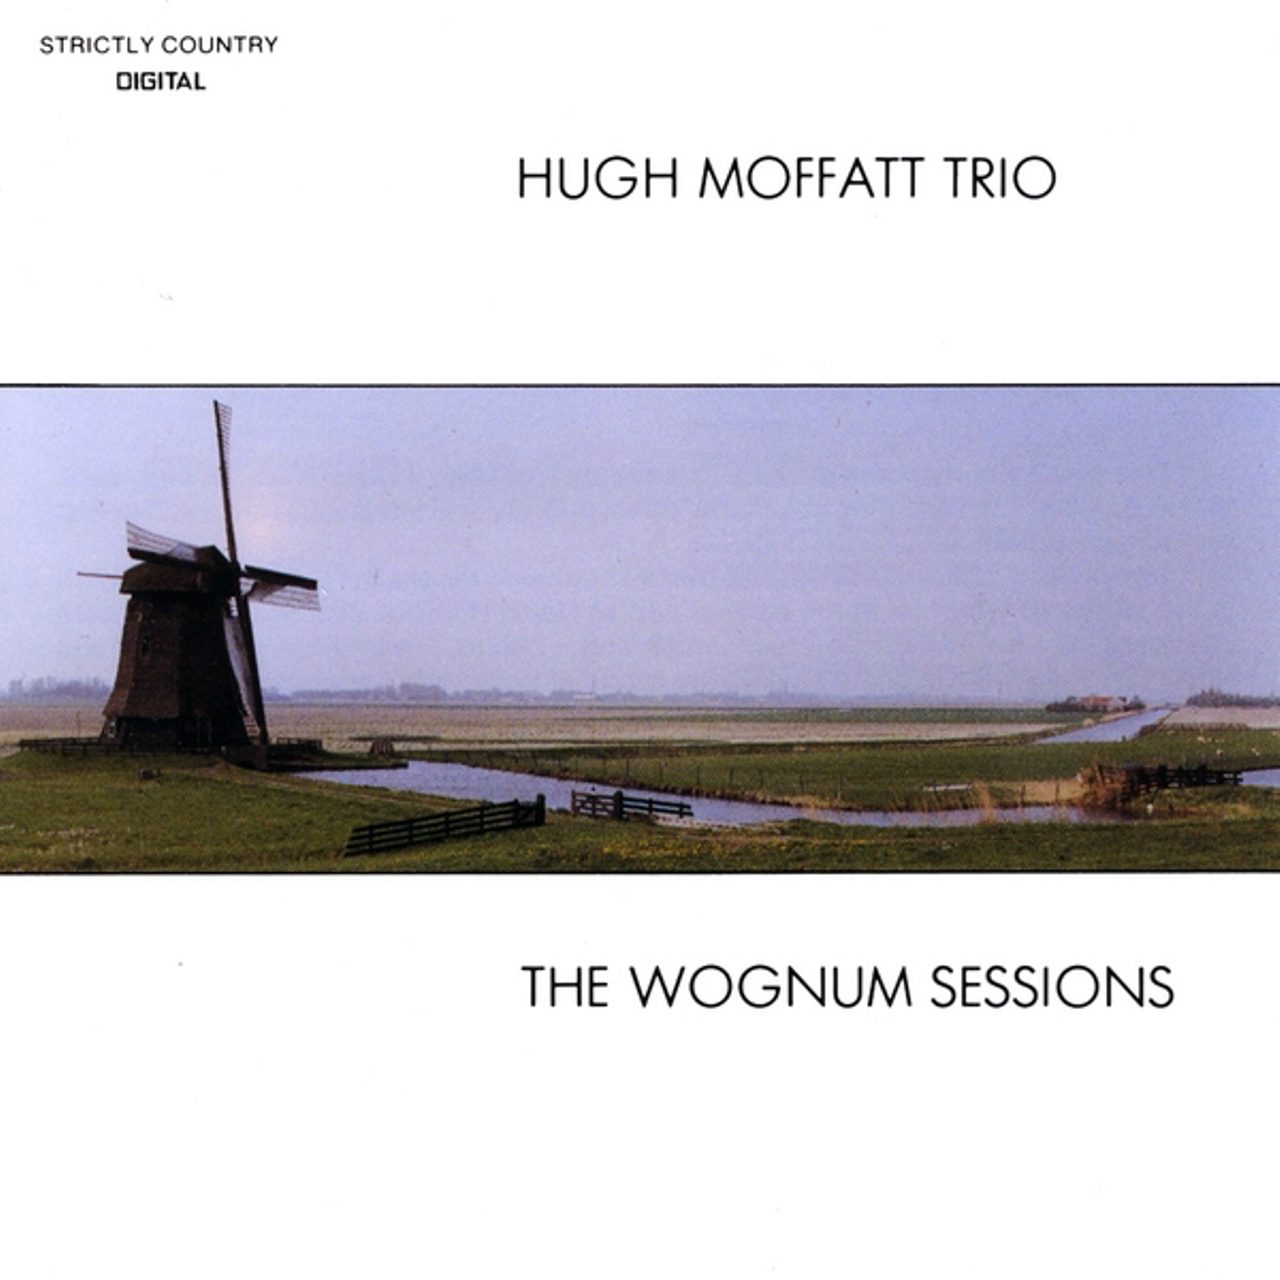 Hugh Moffatt Trio - The Wognum Sessions cover album